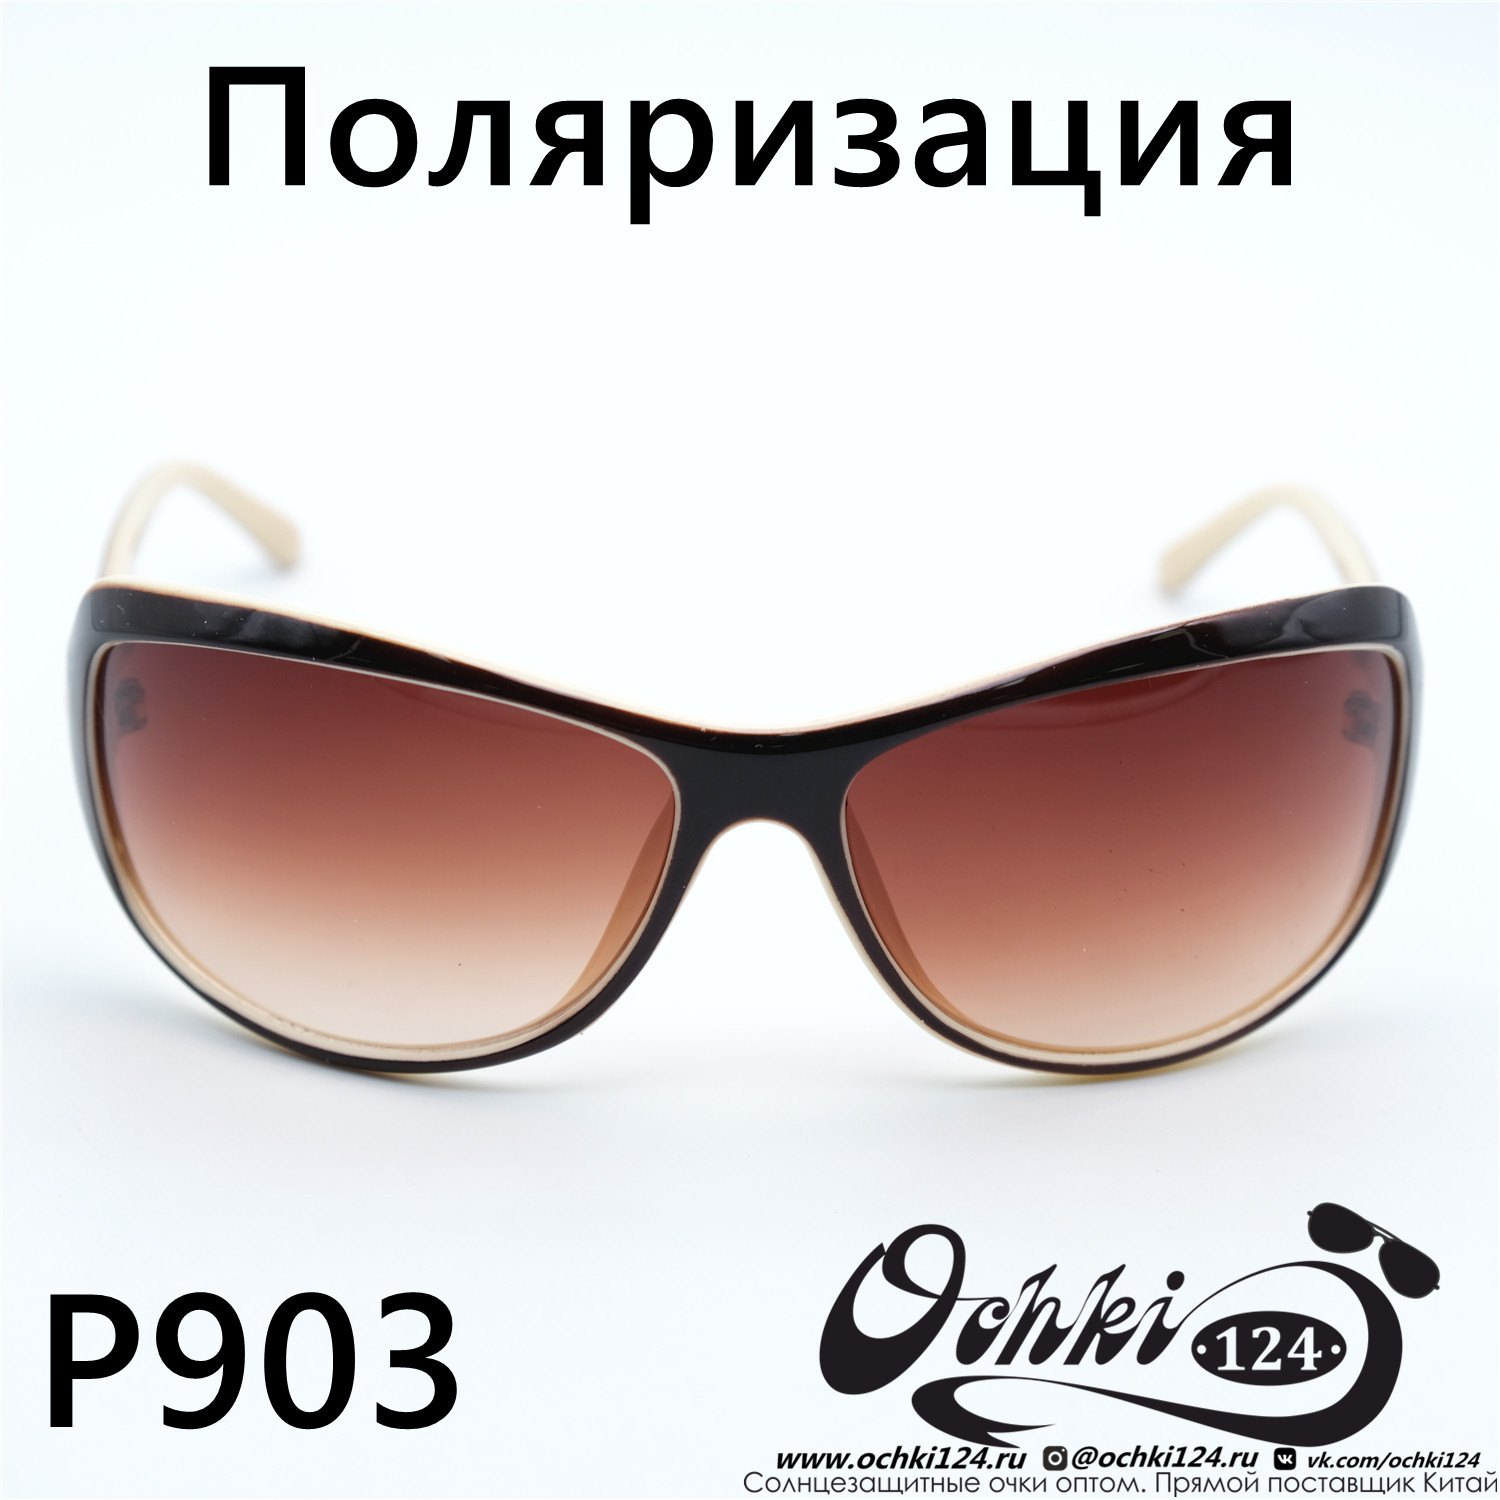  Солнцезащитные очки картинка Женские Prius Polarized Стандартные P903-C3 